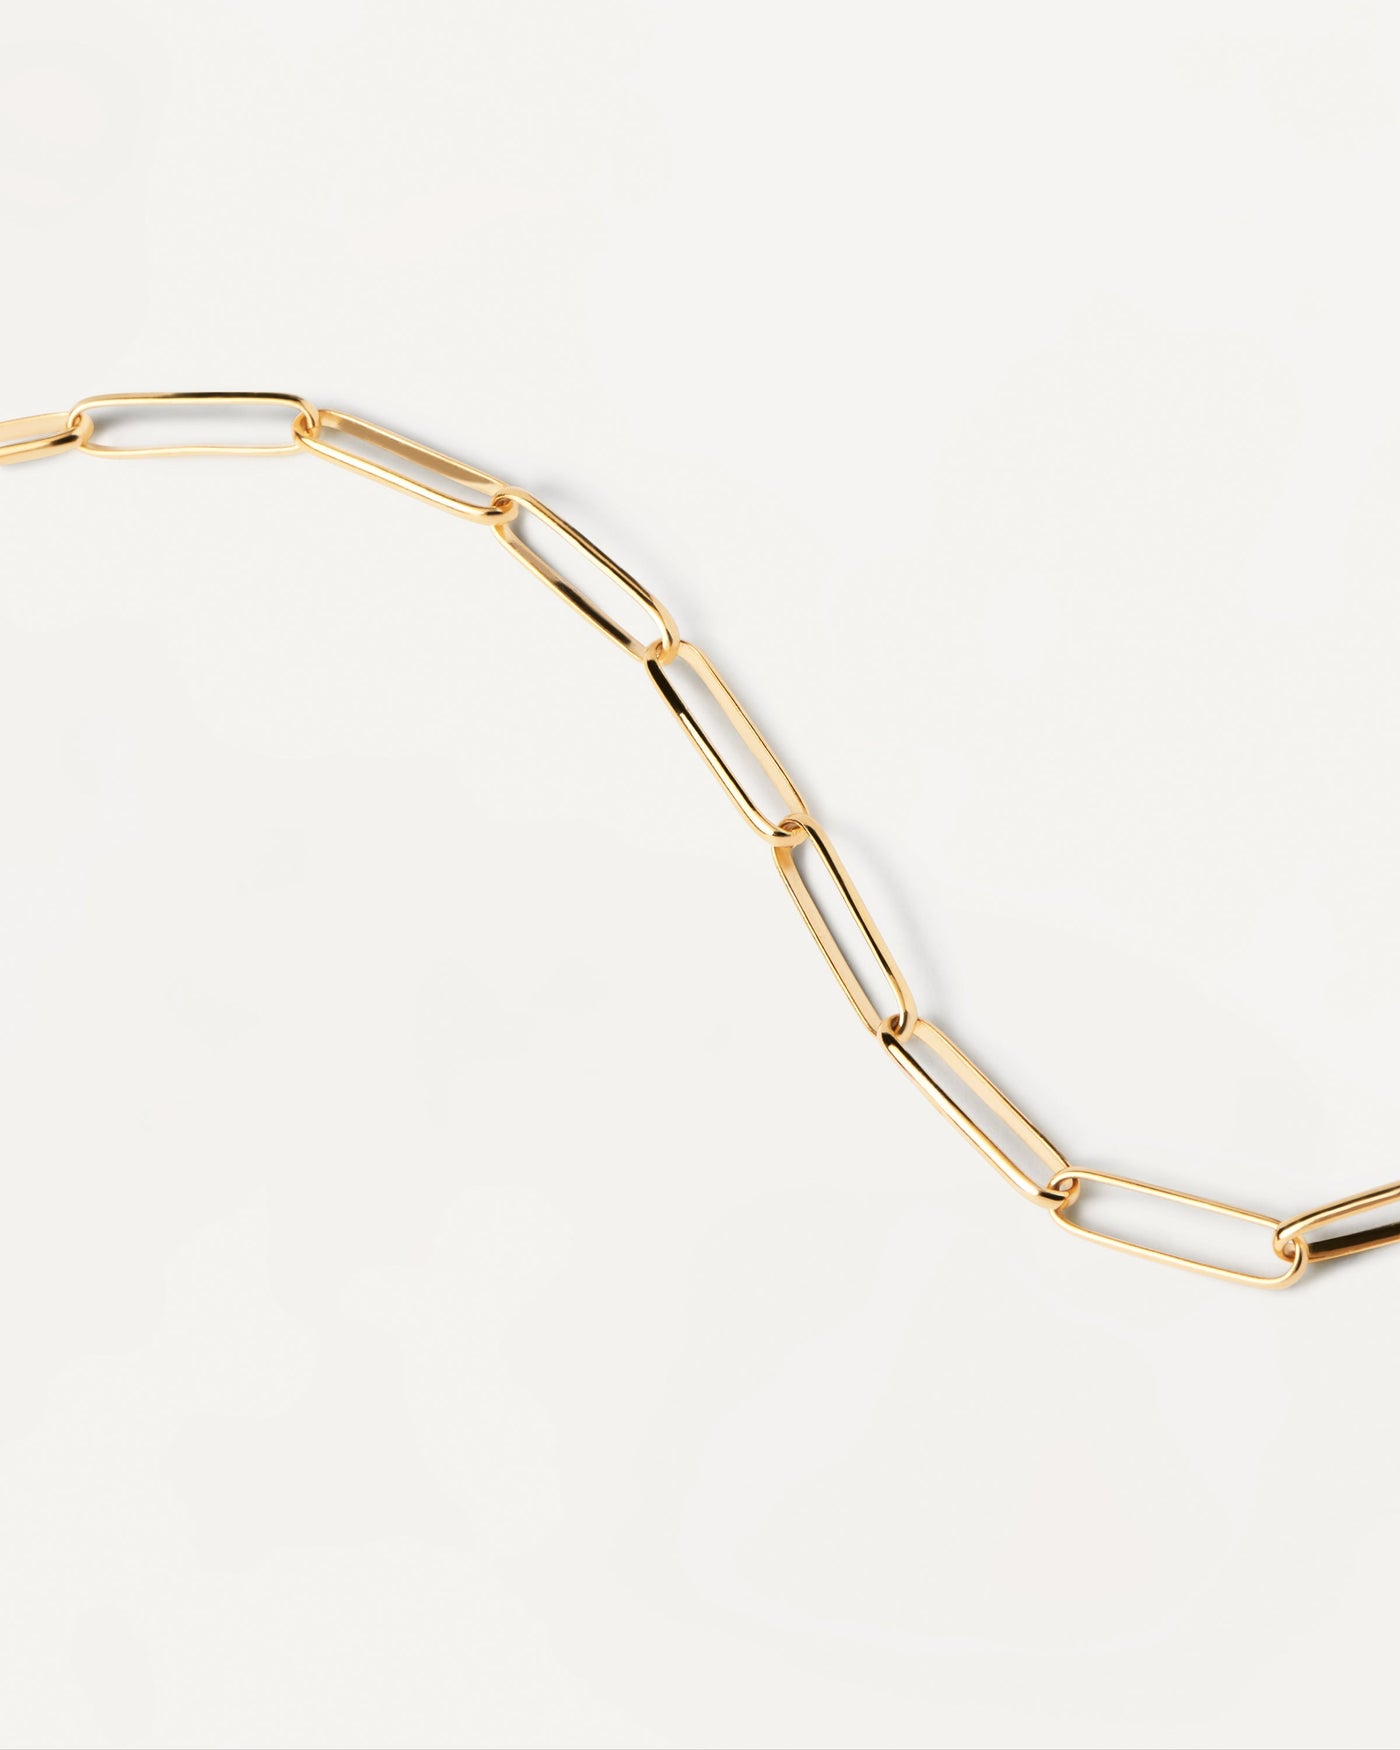 Grosse Gliederkette Halskette. Statement-Kette aus vergoldetem Silber mit großen Gliedern. Erhalten Sie die neuesten Produkte von PDPAOLA. Geben Sie Ihre Bestellung sicher auf und erhalten Sie diesen Bestseller.